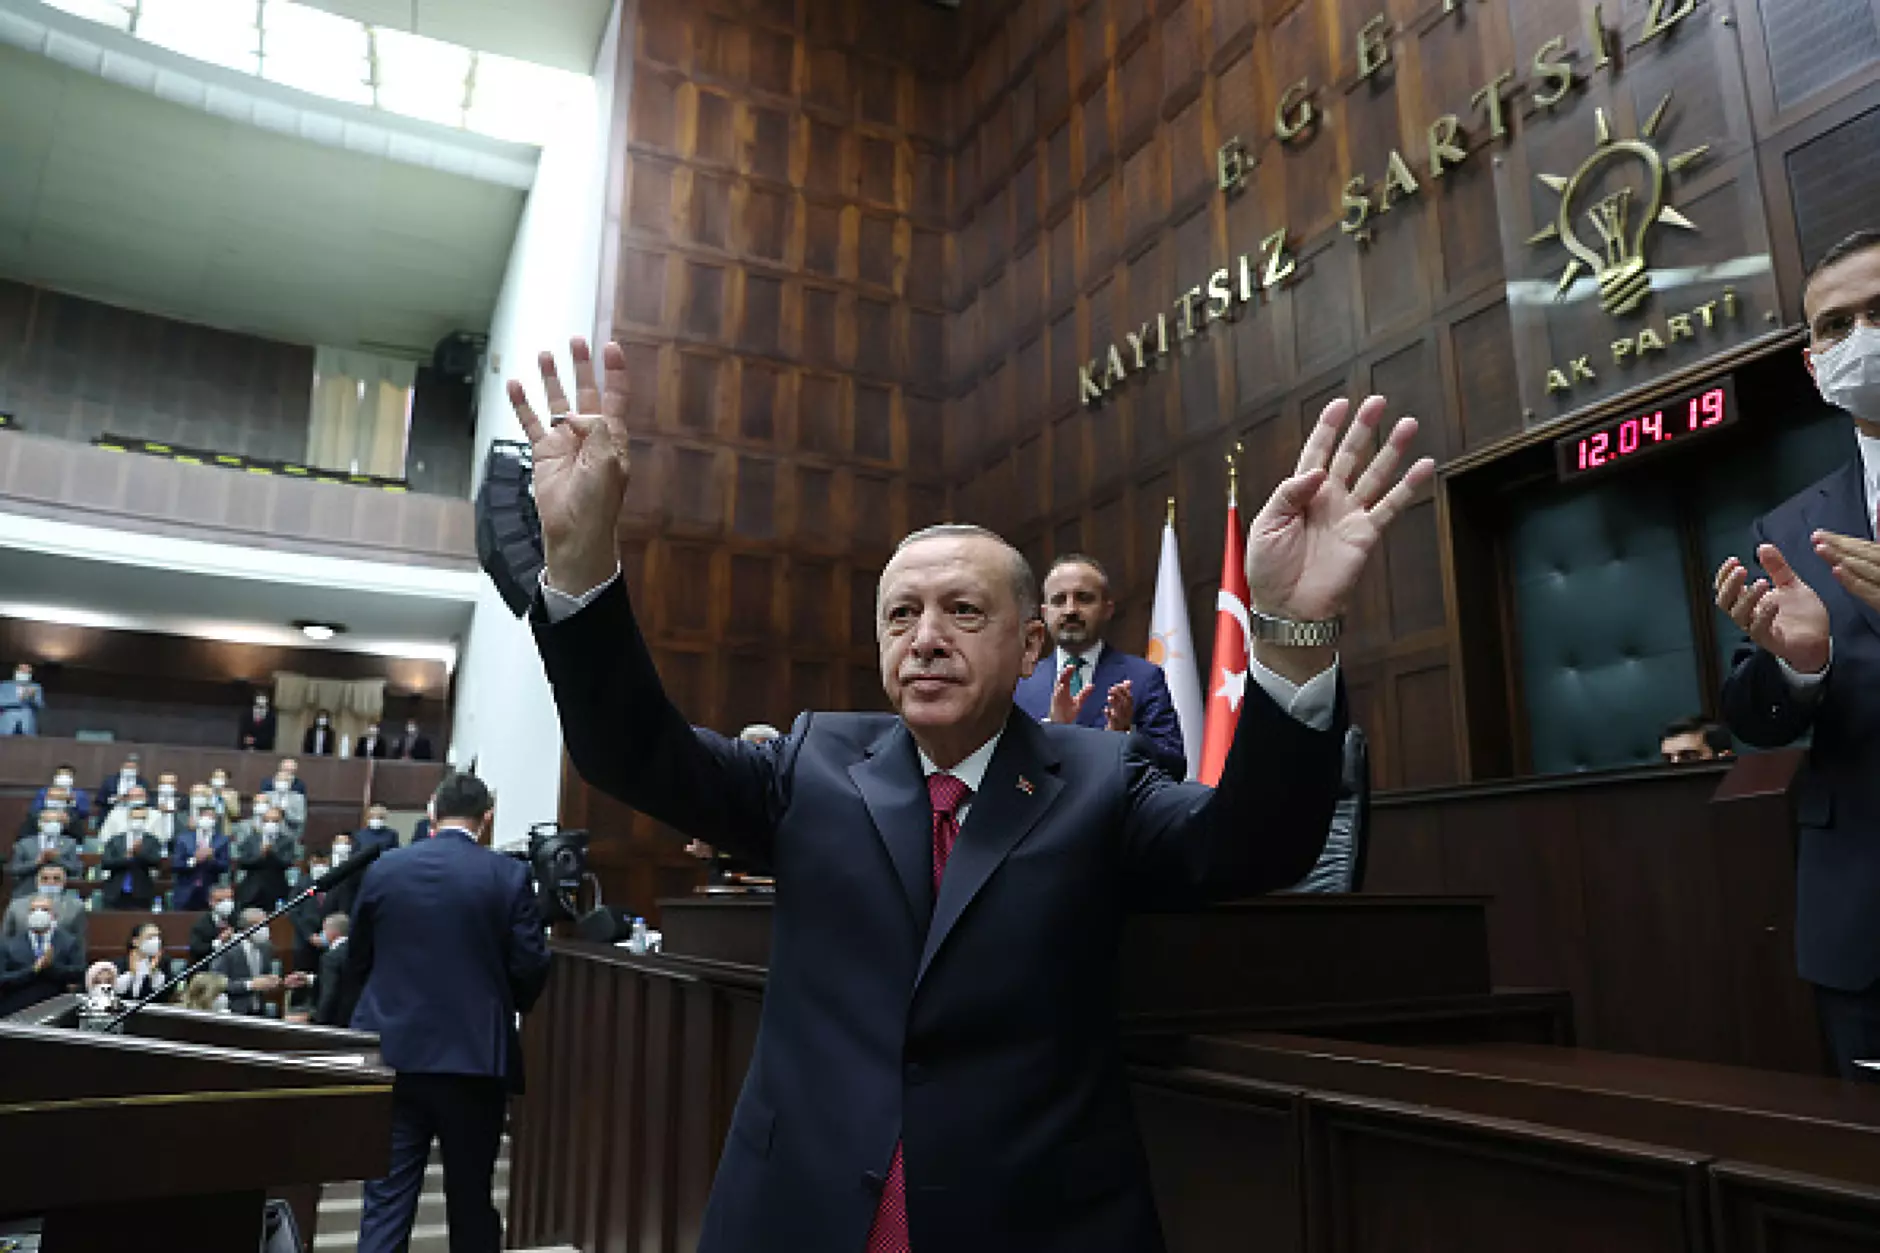 Ердоган обеща рязко забавяне на инфлацията и просперитет на Турция